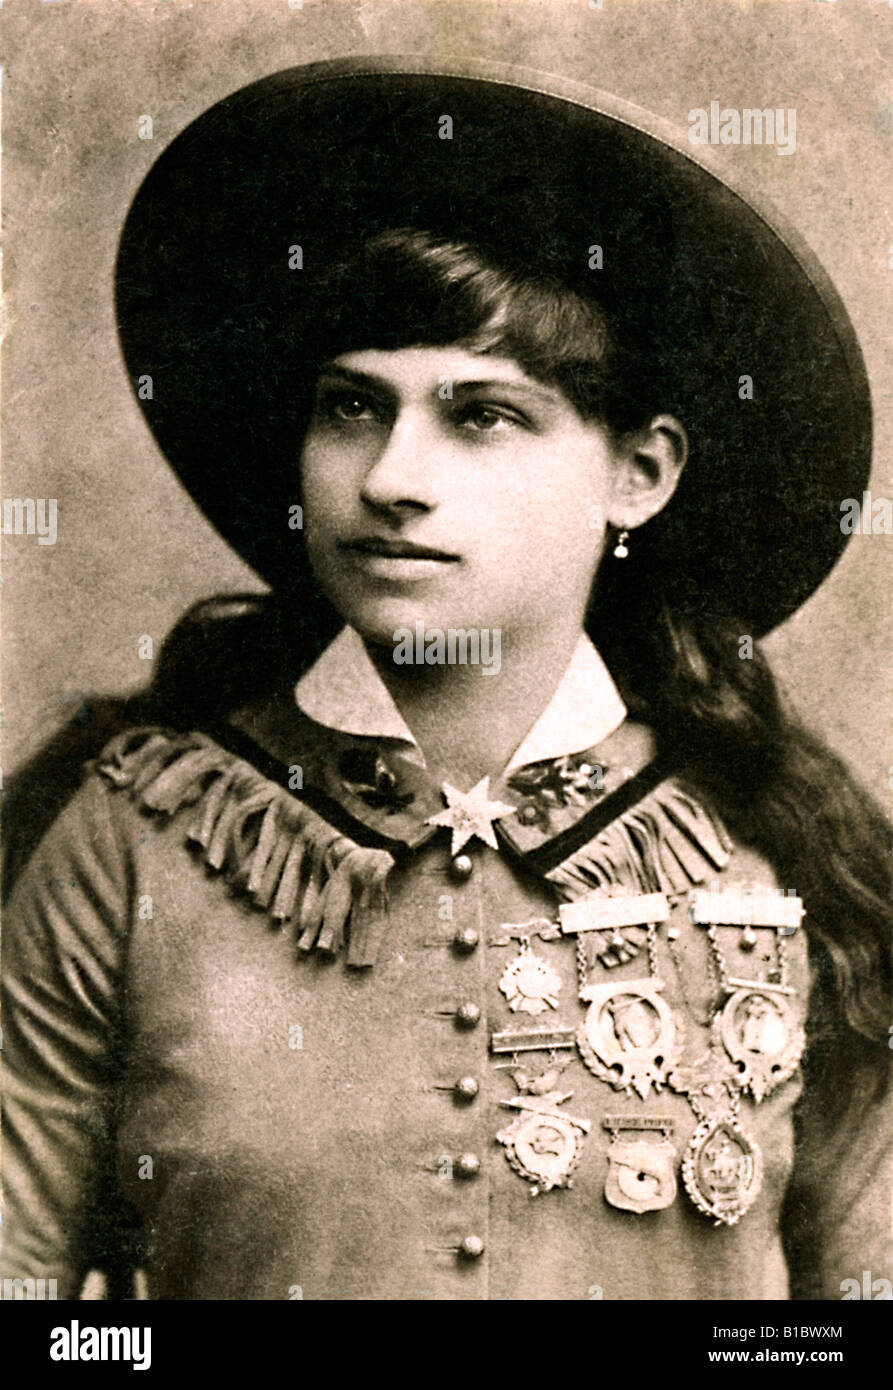 Annie Oakley 1890 foto del legendario francotirador estadounidense y ejecutante con Buffalo Bills Wild West Show Foto de stock